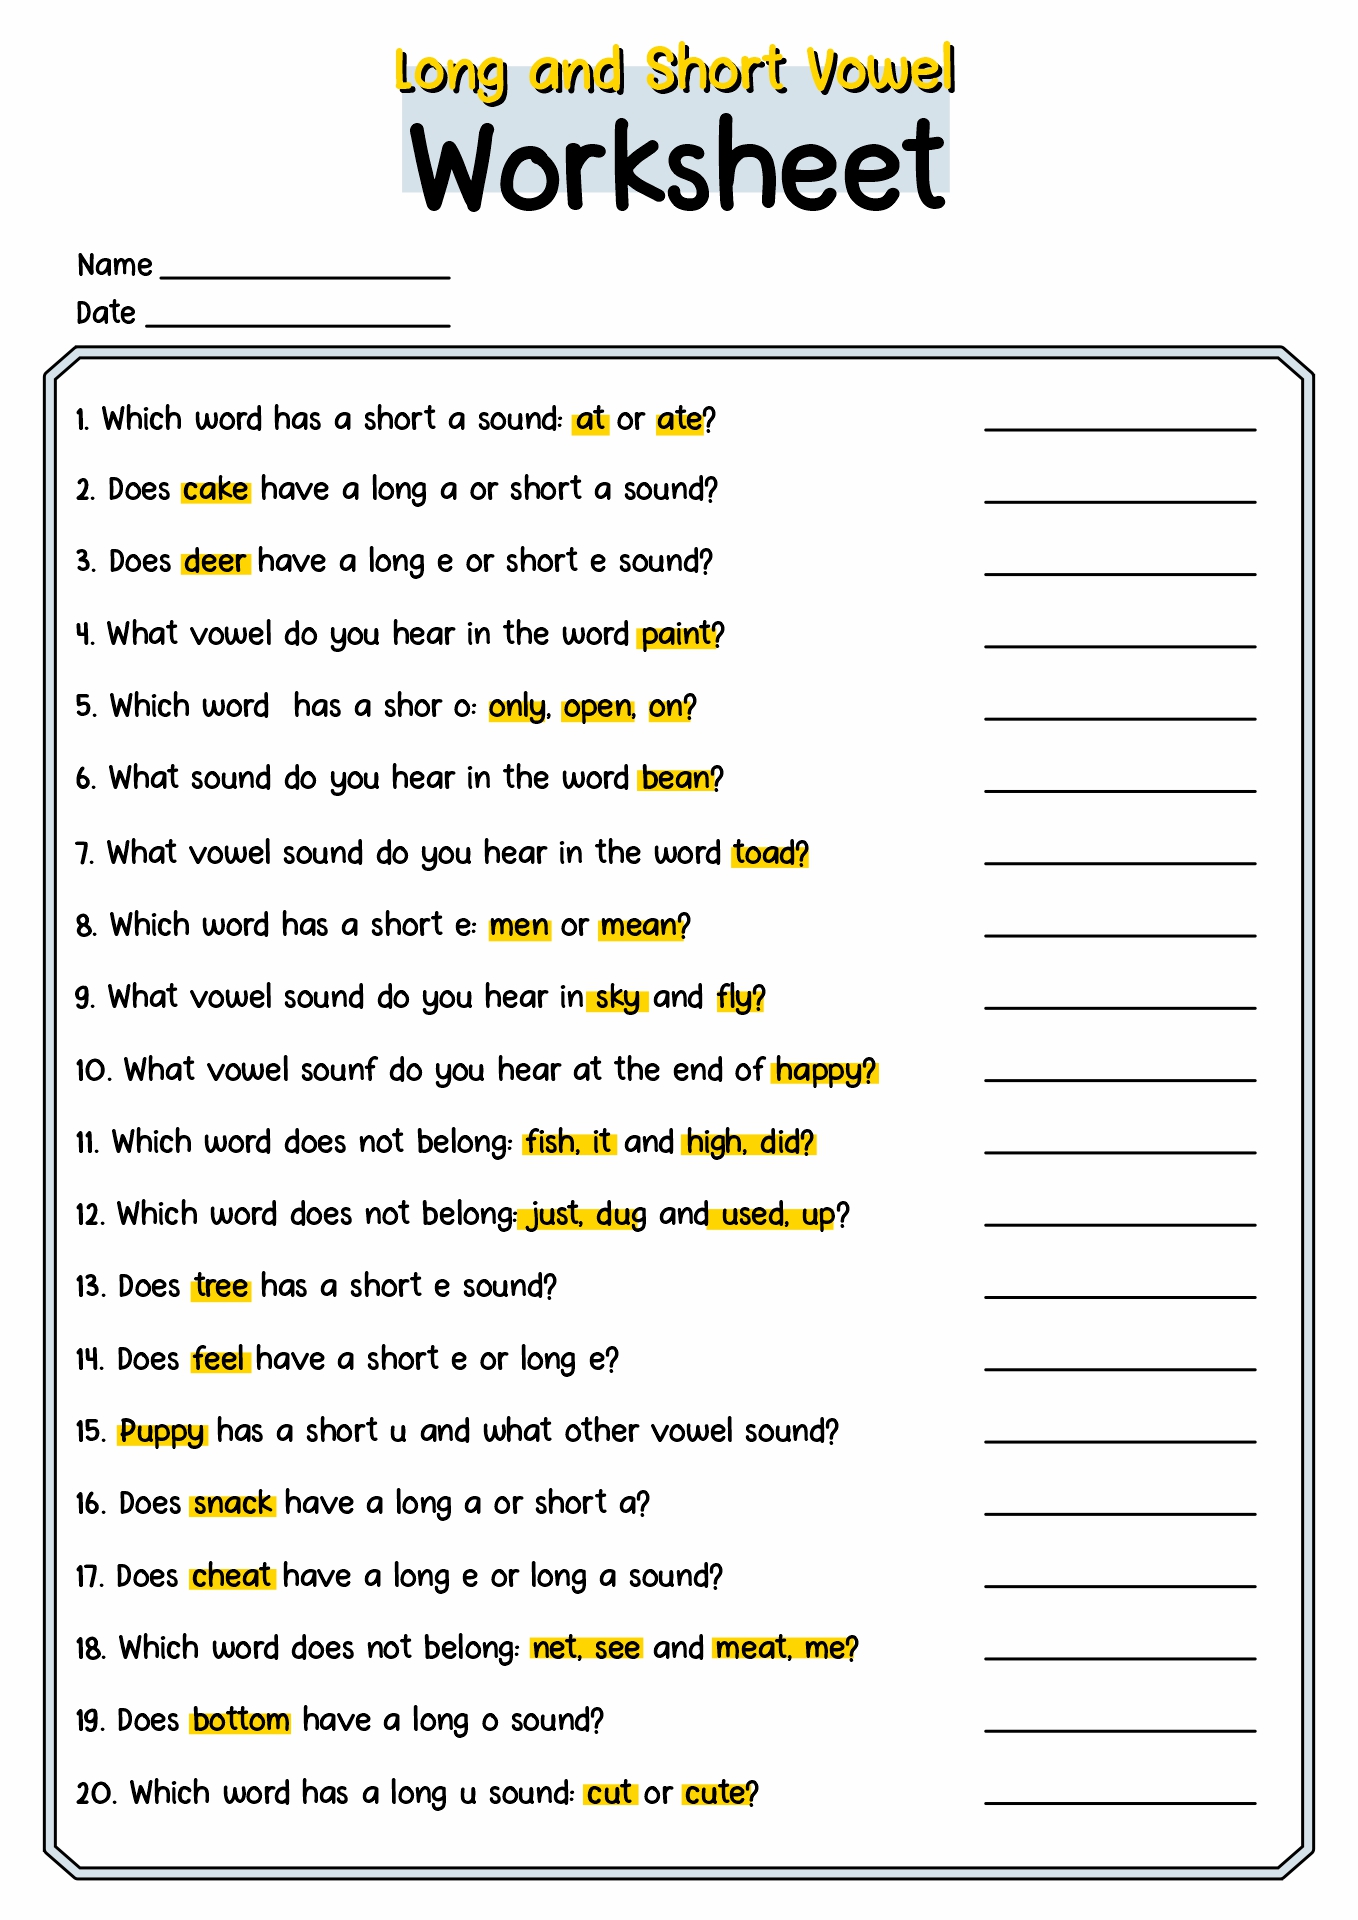 15-best-images-of-long-and-short-vowel-worksheets-kindergarten-long